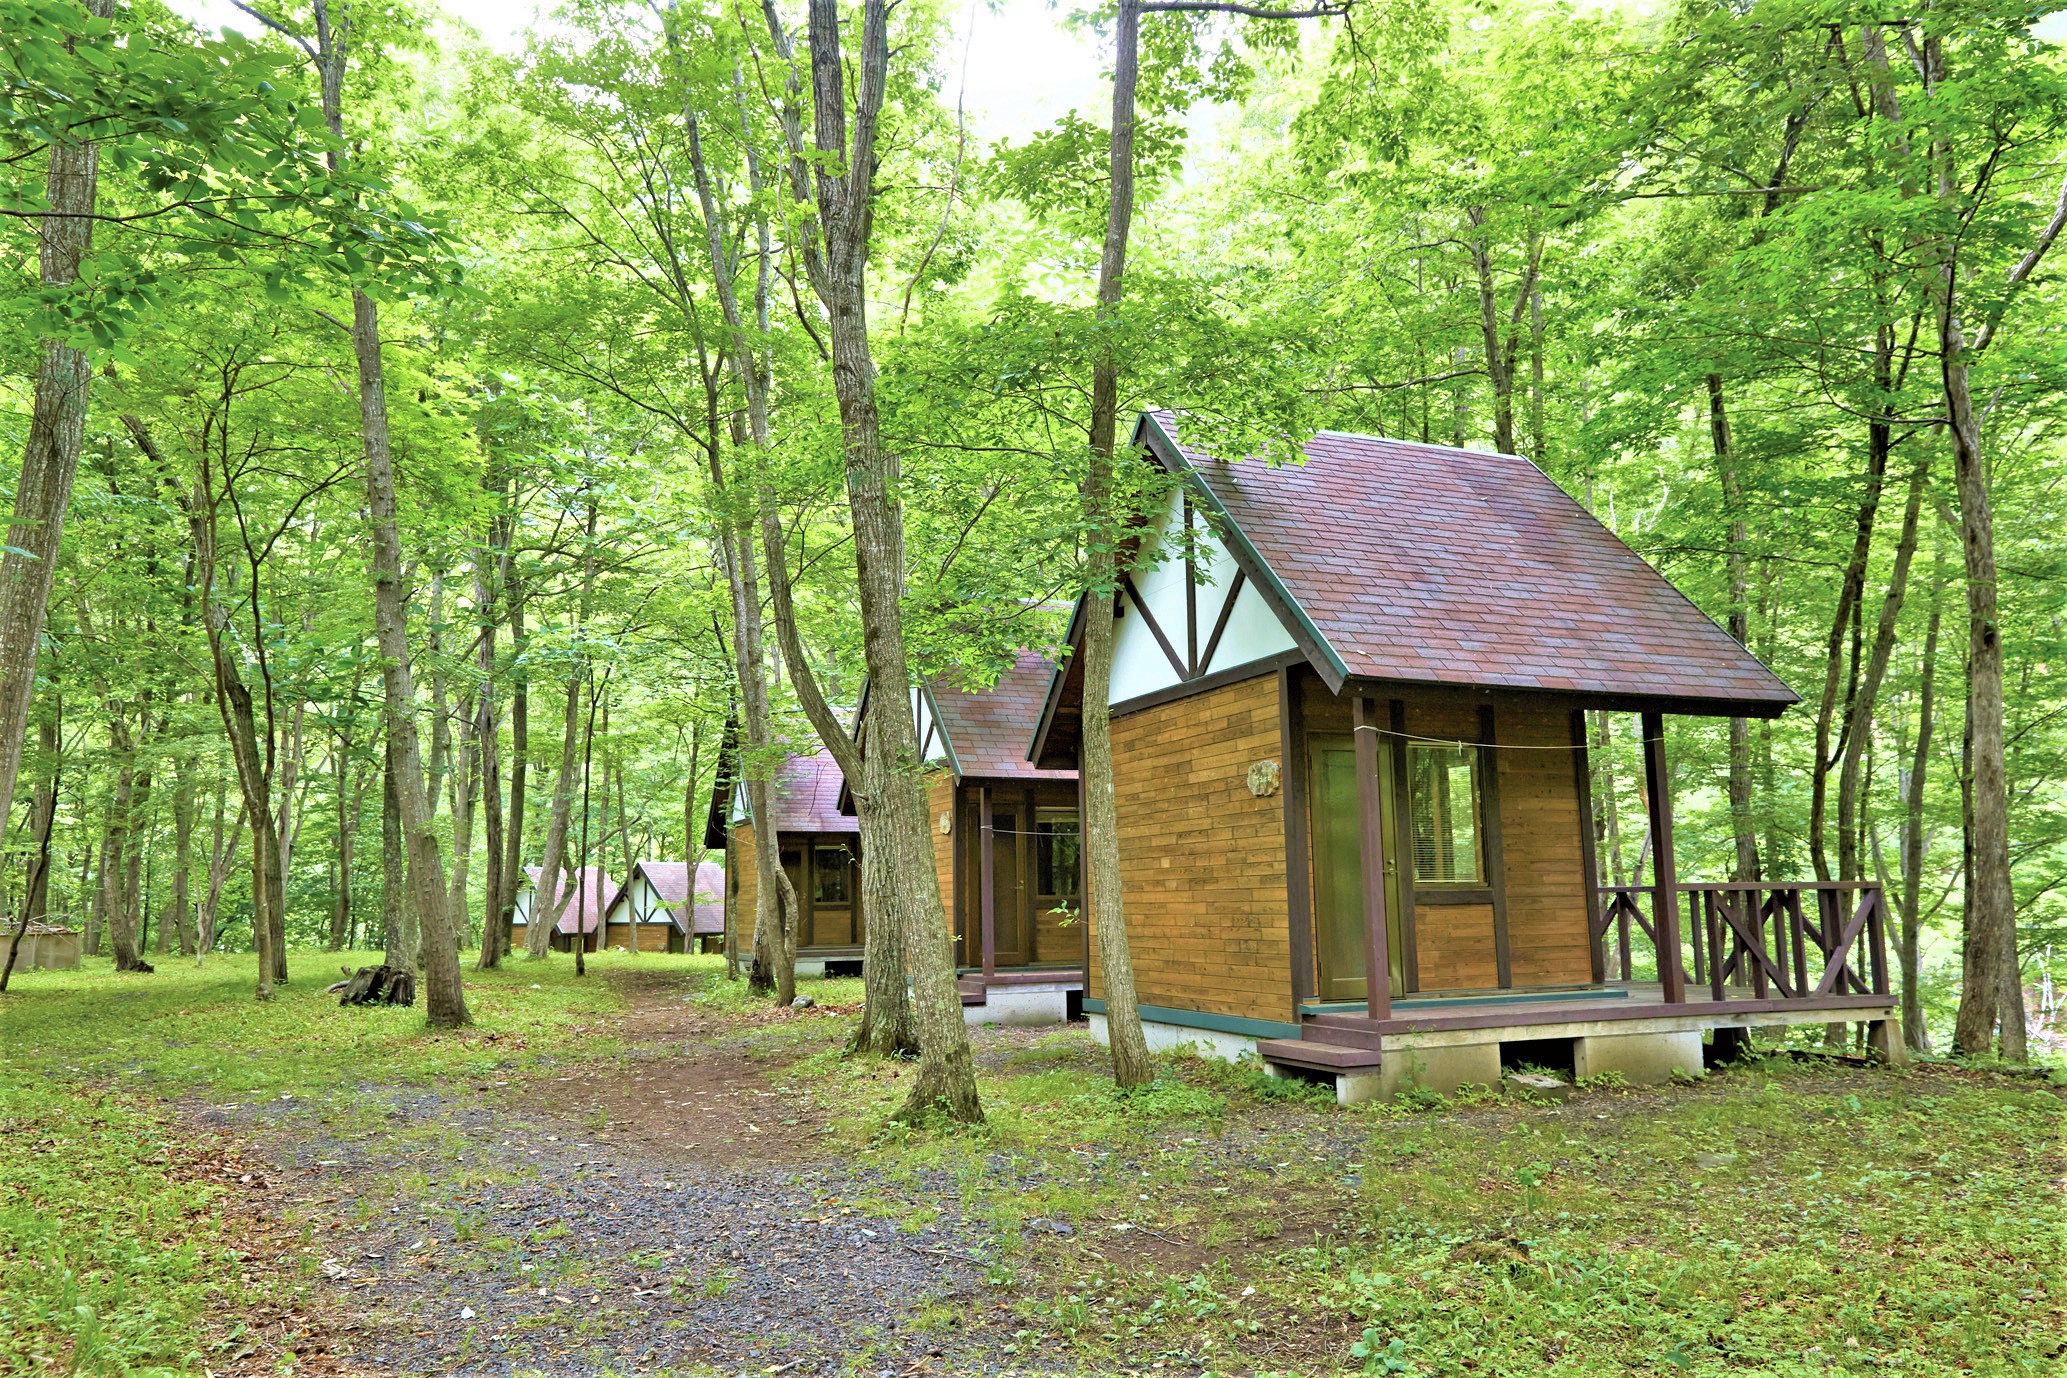 木造の小さな小屋が森林の中に複数設置されている。